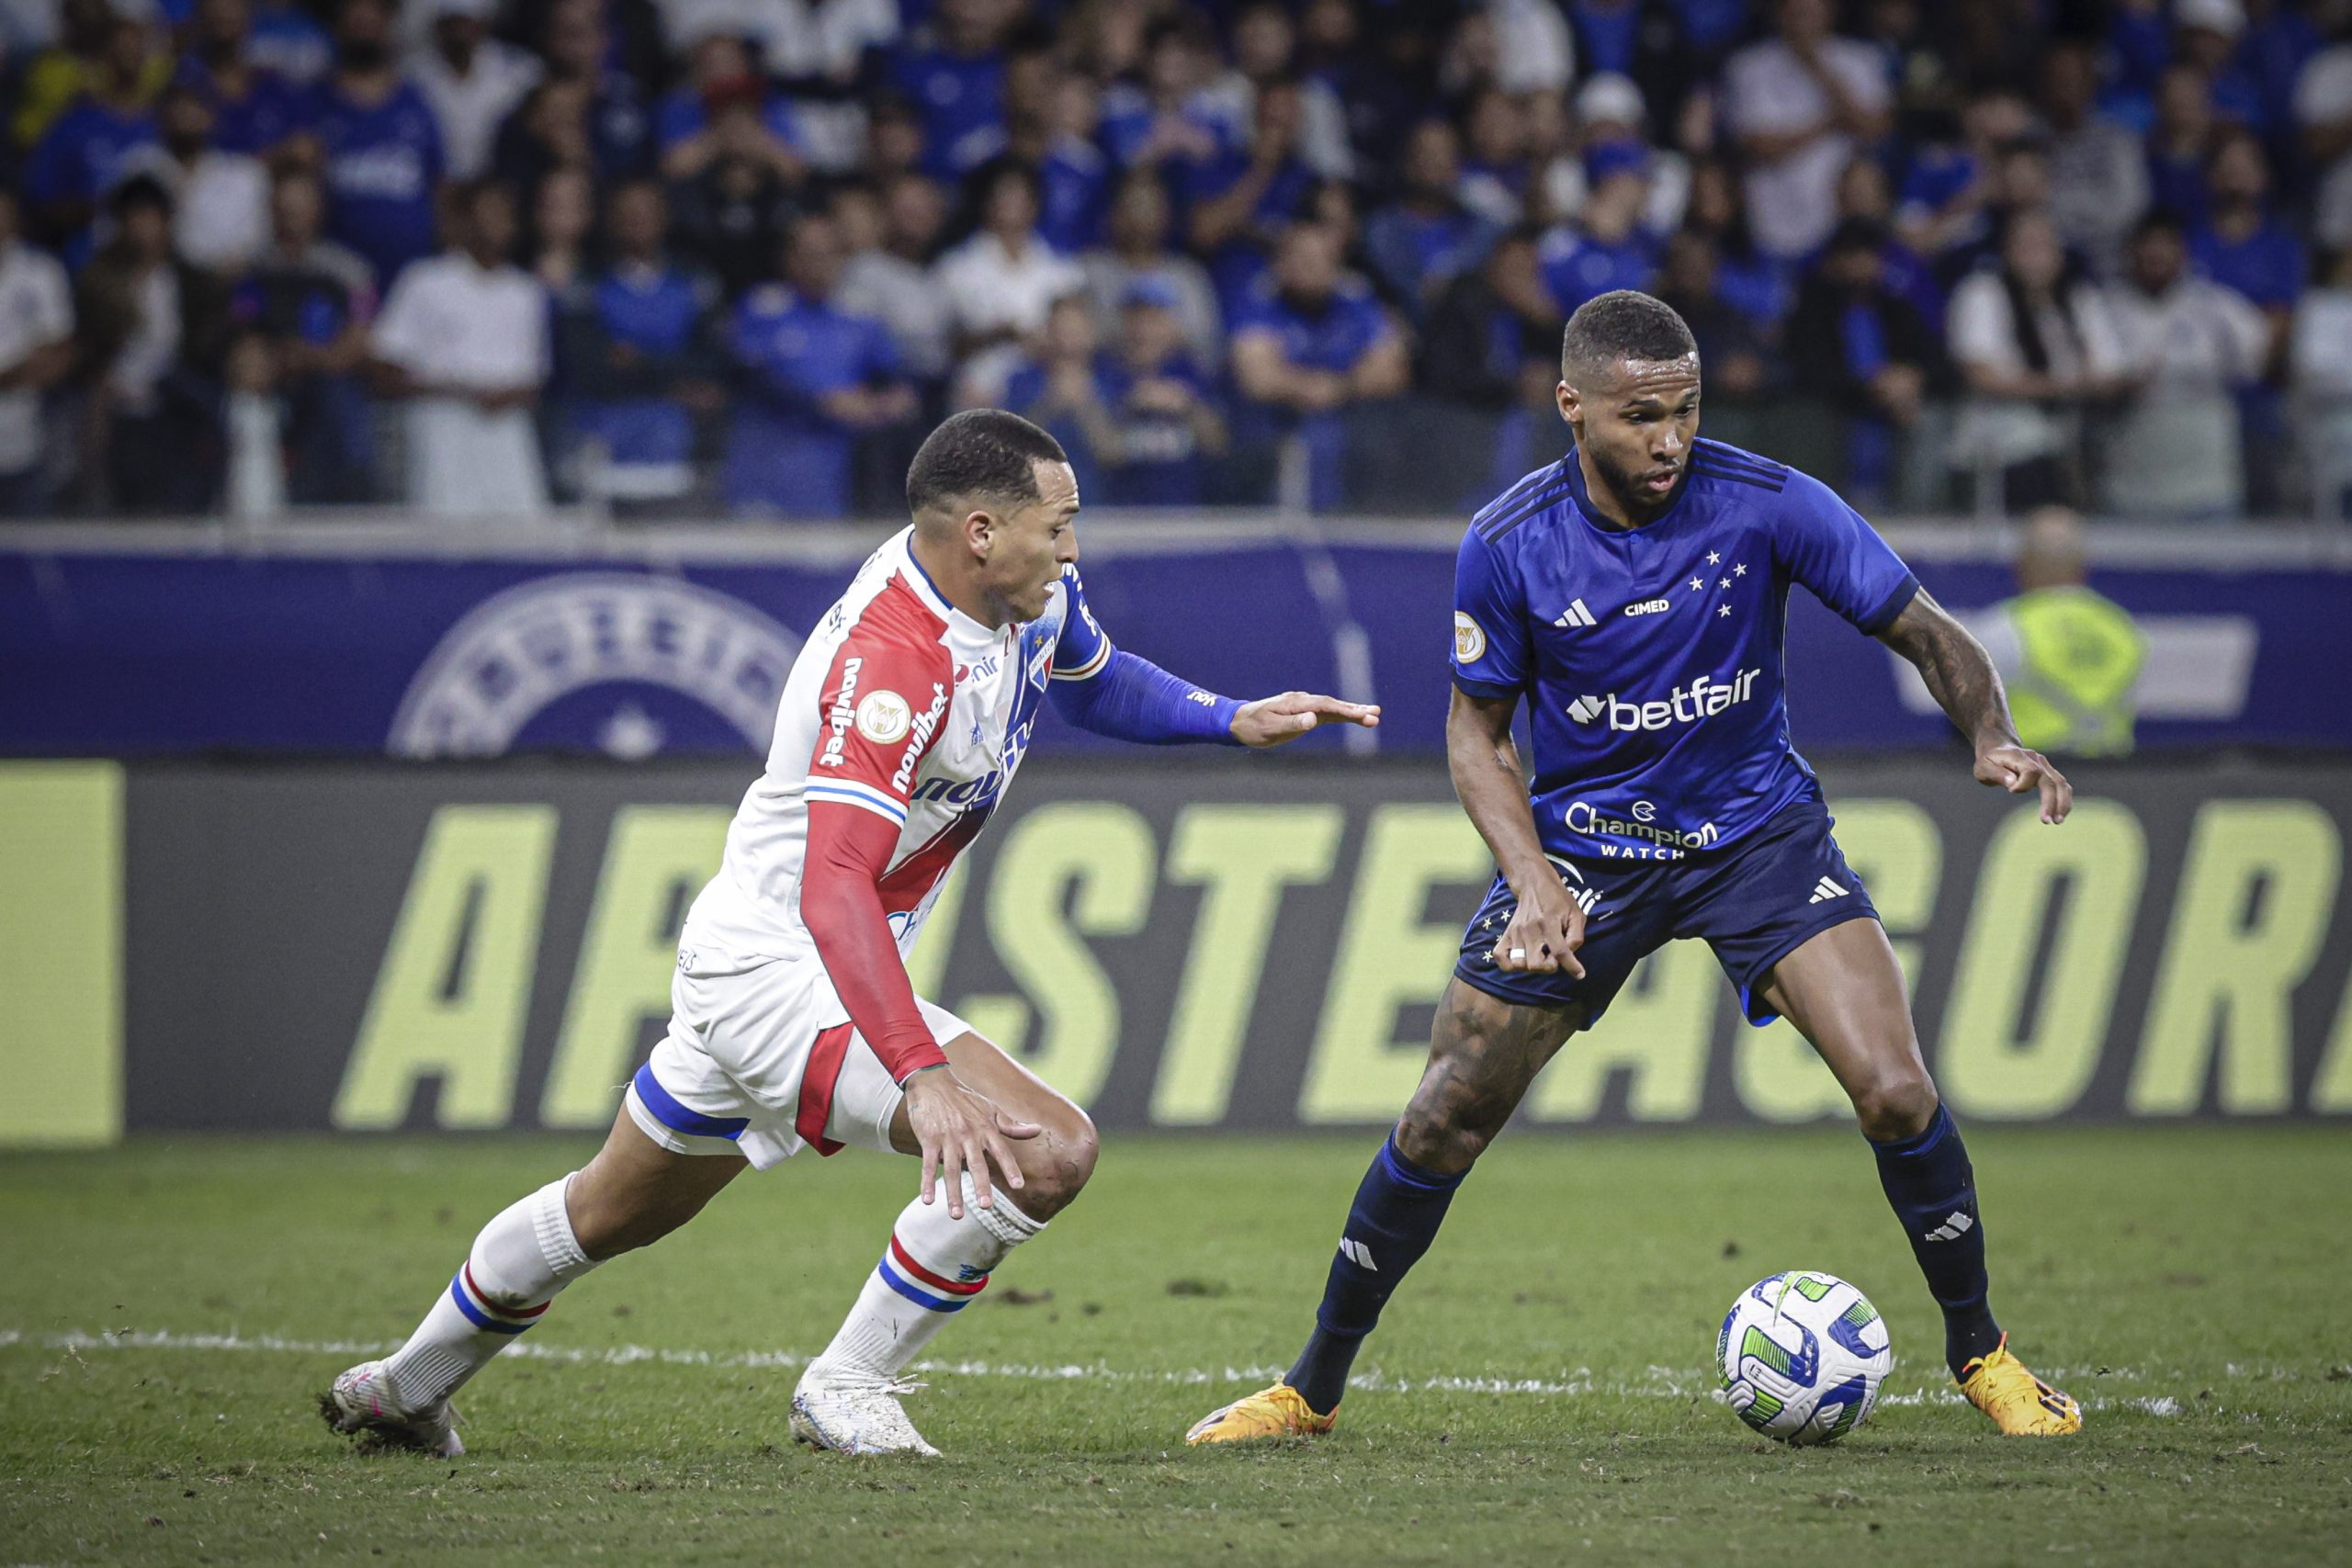 Atacante Wesley, do Cruzeiro, sendo marcado pelo zagueiro Titi, do Fortaleza